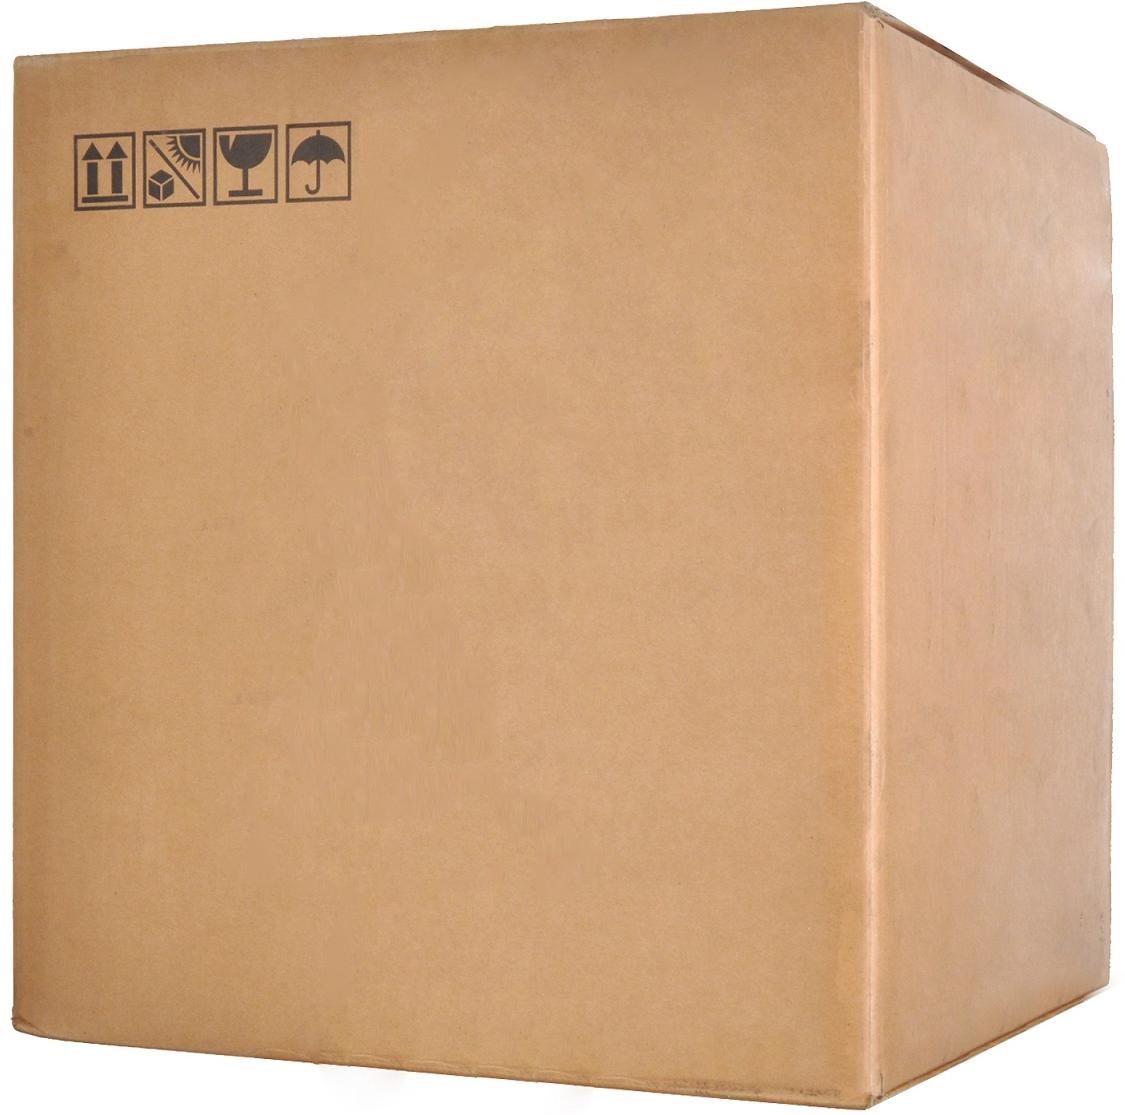 Тонер B&W HPR-005-20K, коробка 10 кг, черный, совместимый для LJ1010/1200/1100/1320/4000/5000/8100/P2035/2055/M401, 2шт